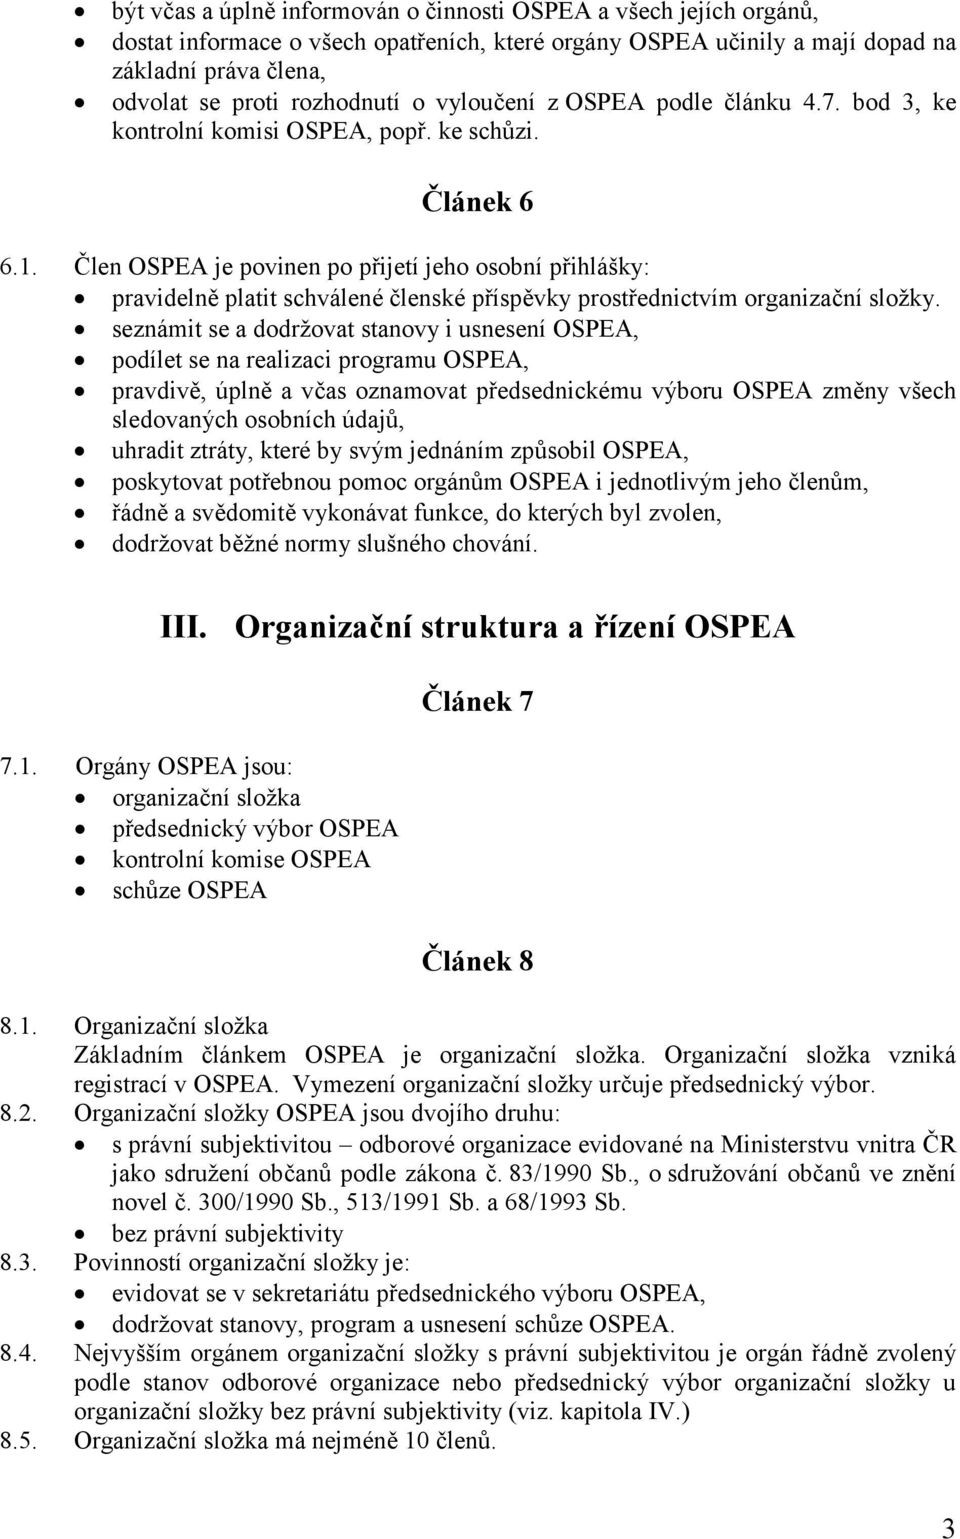 Člen OSPEA je povinen po přijetí jeho osobní přihlášky: pravidelně platit schválené členské příspěvky prostřednictvím organizační složky.